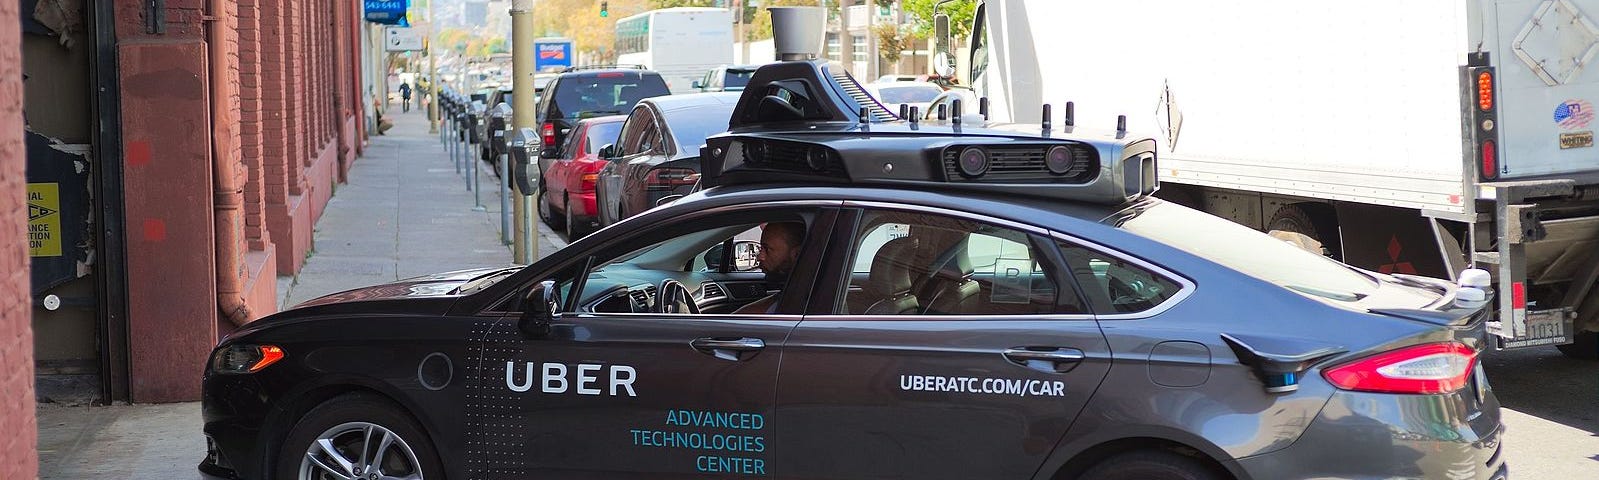 Uber’s self driving car.